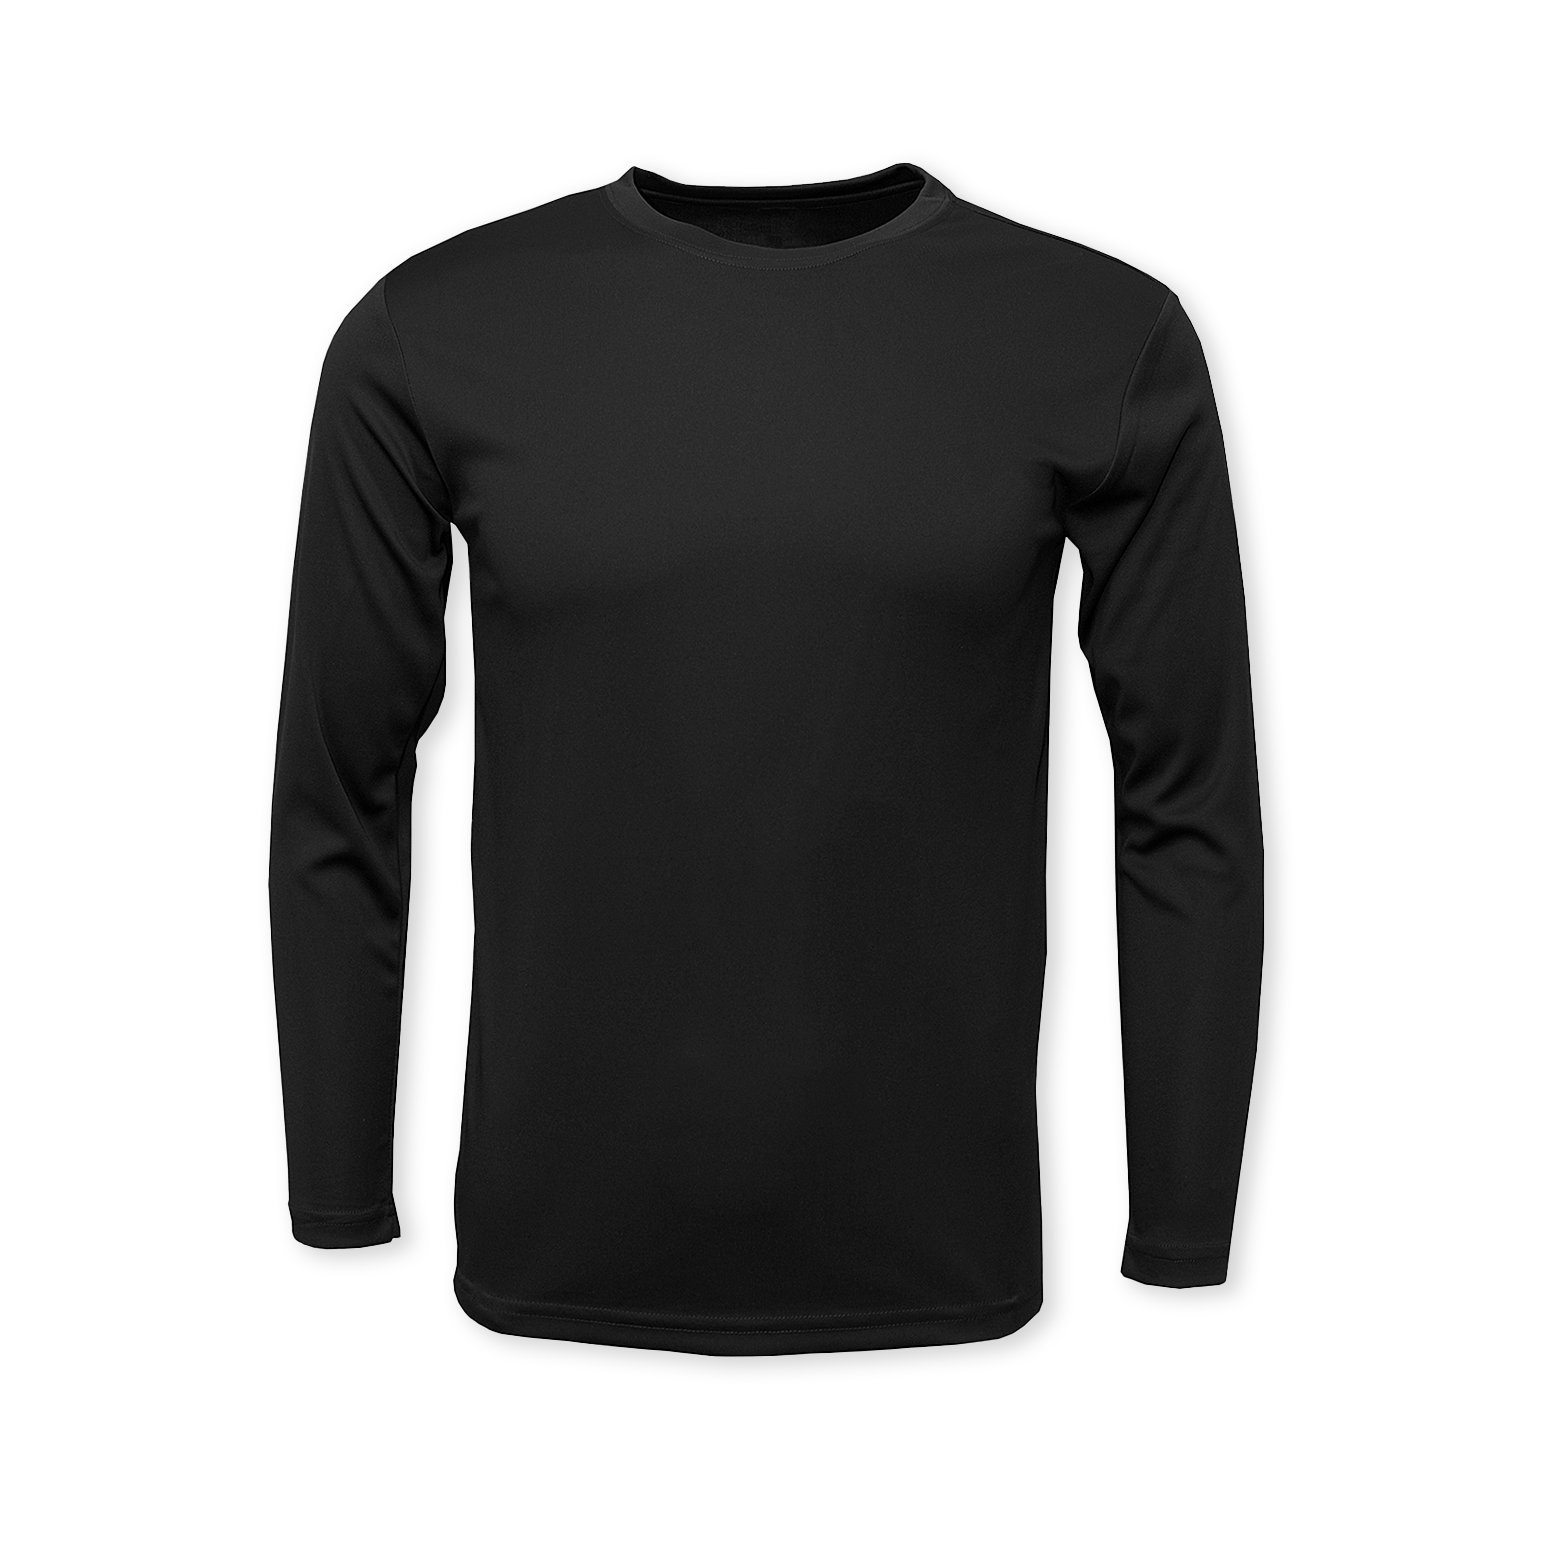 https://saltyprinting.com/cdn/shop/products/black-front-performance-long-sleeve-t-shirt_43ed746a-e84f-435b-92e2-98b537b3e914.png?v=1673466175